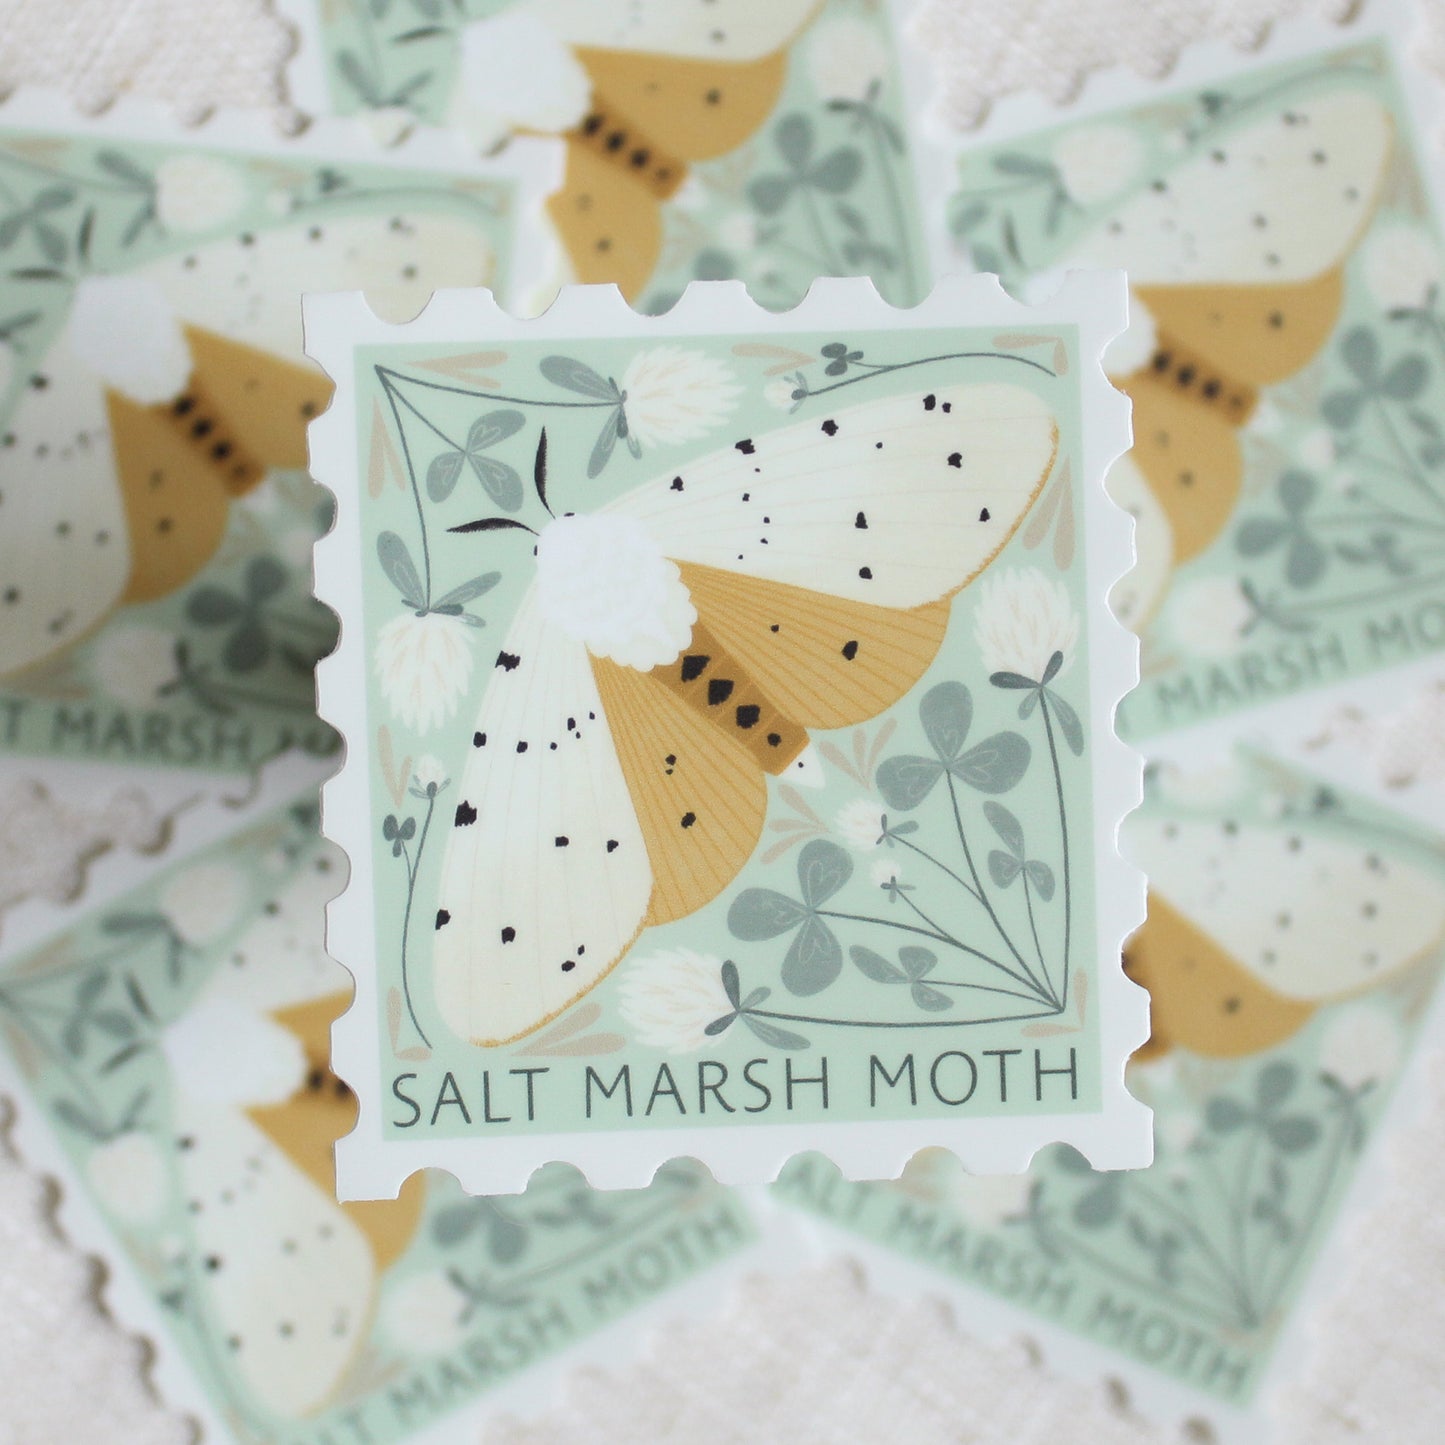 Salt marsh moth, stamp shaped vinyl sticker